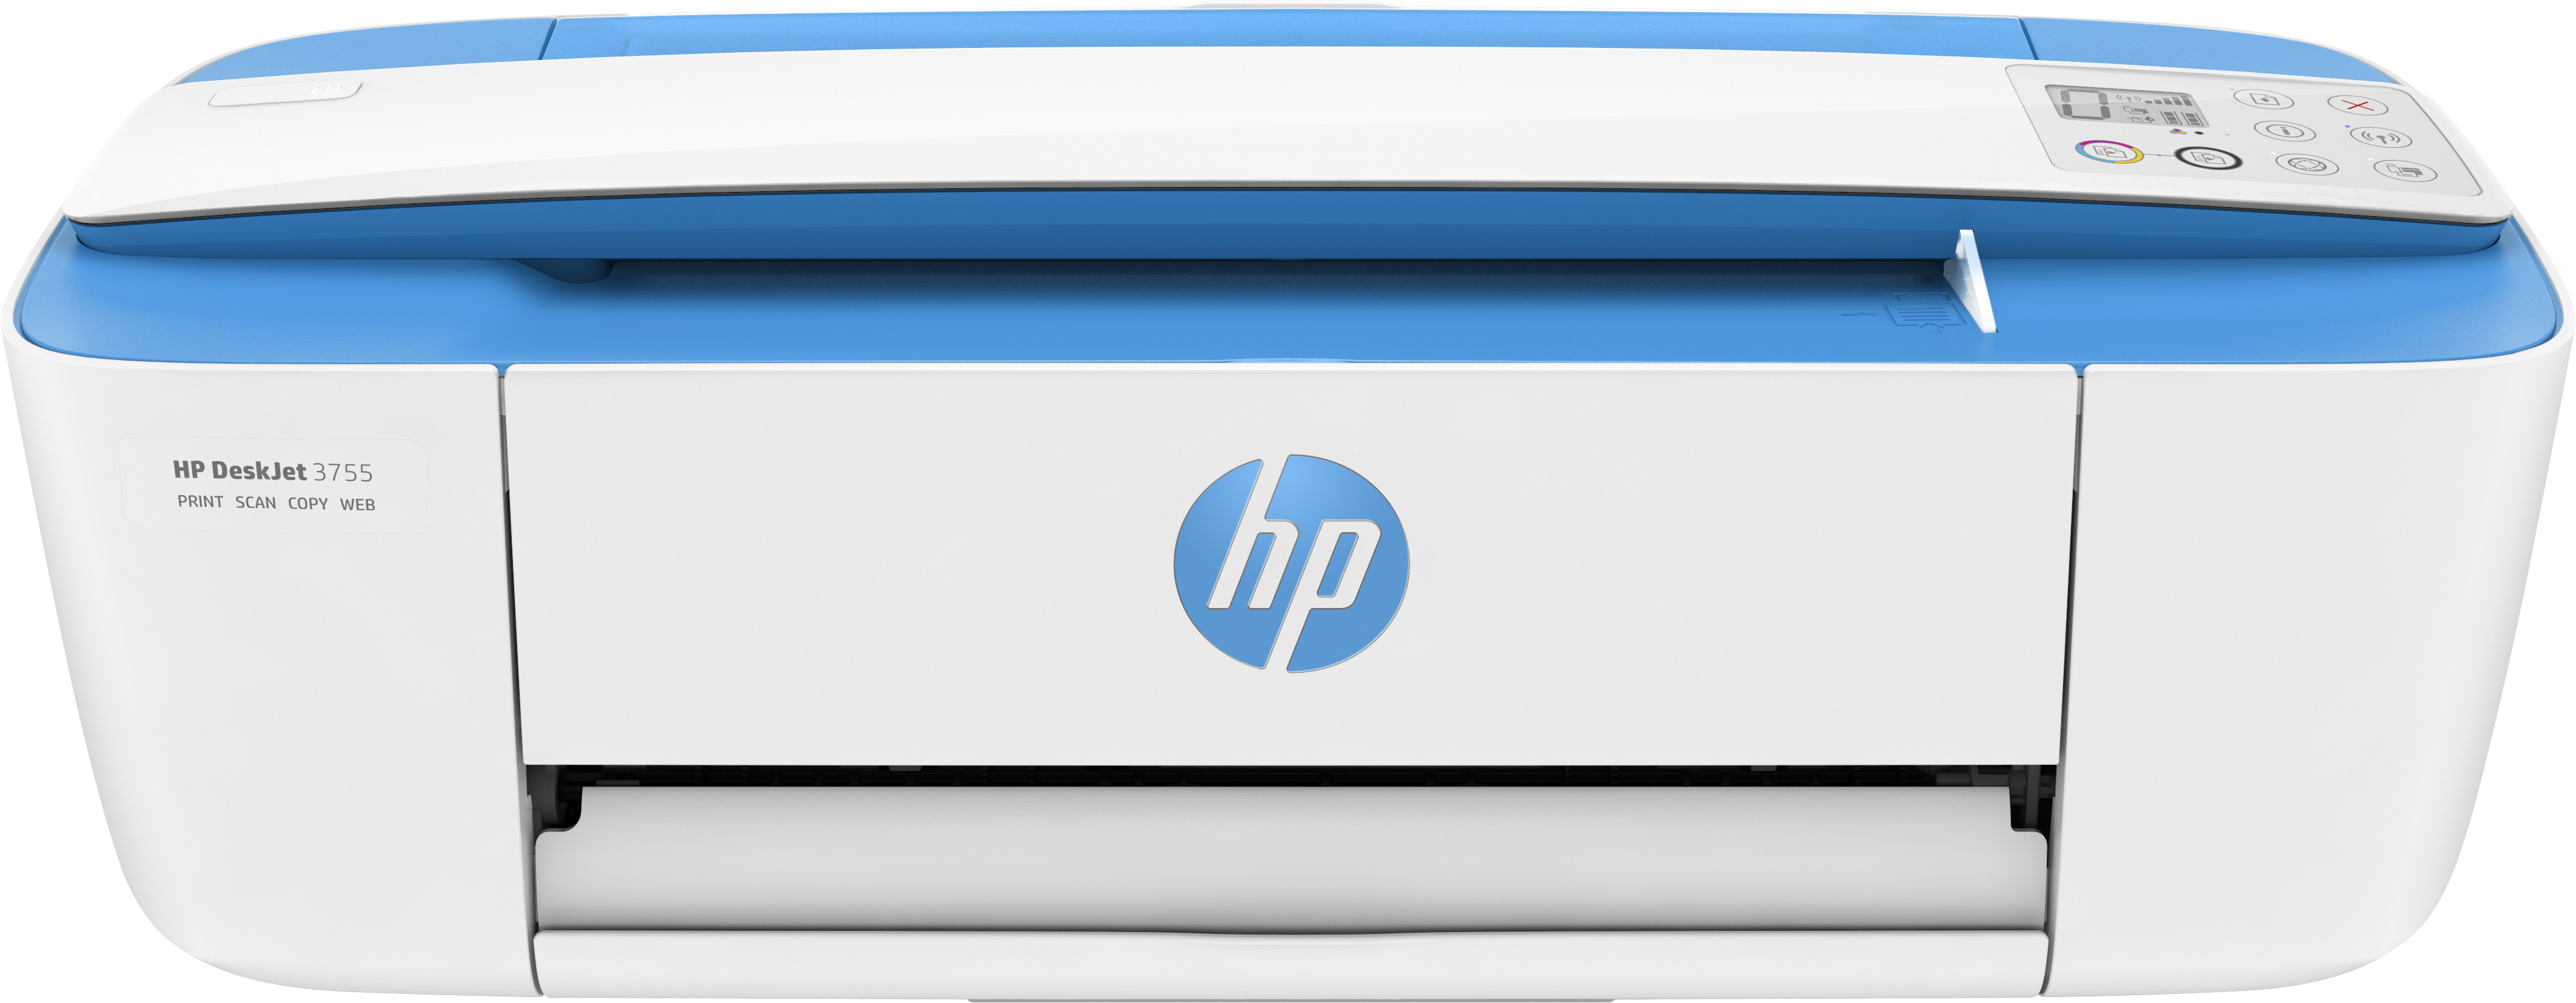 Geniet optillen Daar HP DeskJet HP DeskJet 3750 All-in-One printer, Home, Afdrukken, kopiëren,  scannen, draadloos, Scans naar e-mail/pdf; Dubbelzijdig printen |  Specificaties | Kieskeurig.nl